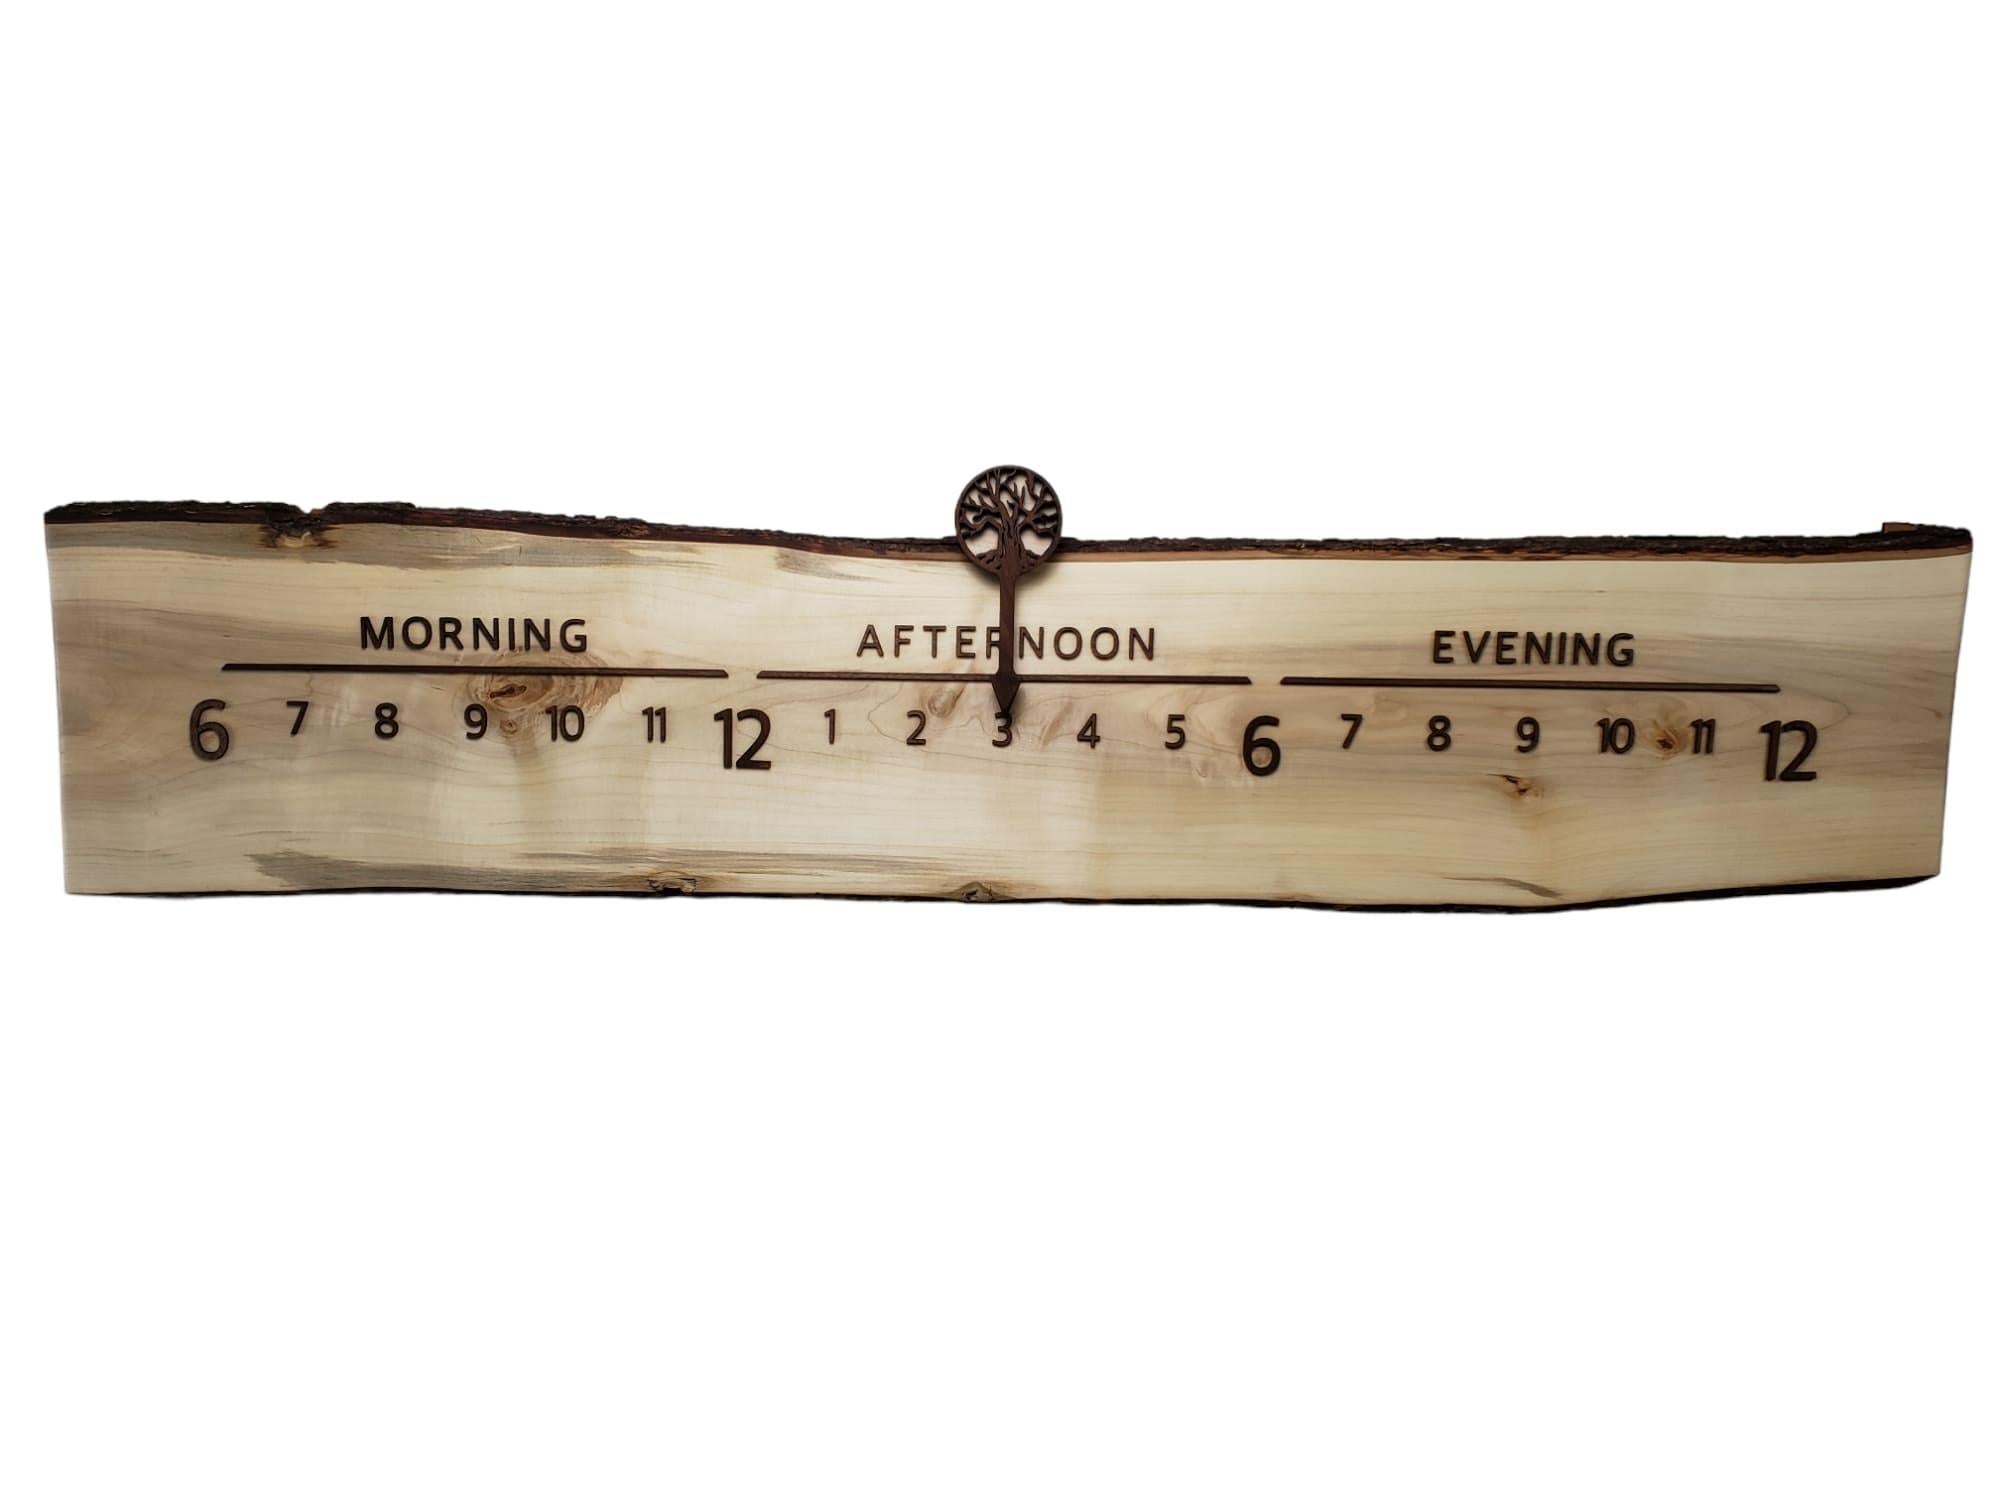 Alruba ist eine lineare Uhr mit einem leuchtenden Stück Ahornholz mit einer doppelten, lebendigen Kante, die aus verschiedenen Blickwinkeln glitzert.

Linear Clocks sind eine Erfindung von Linear Clockworks; diese Uhren zeigen die Zeit auf eine